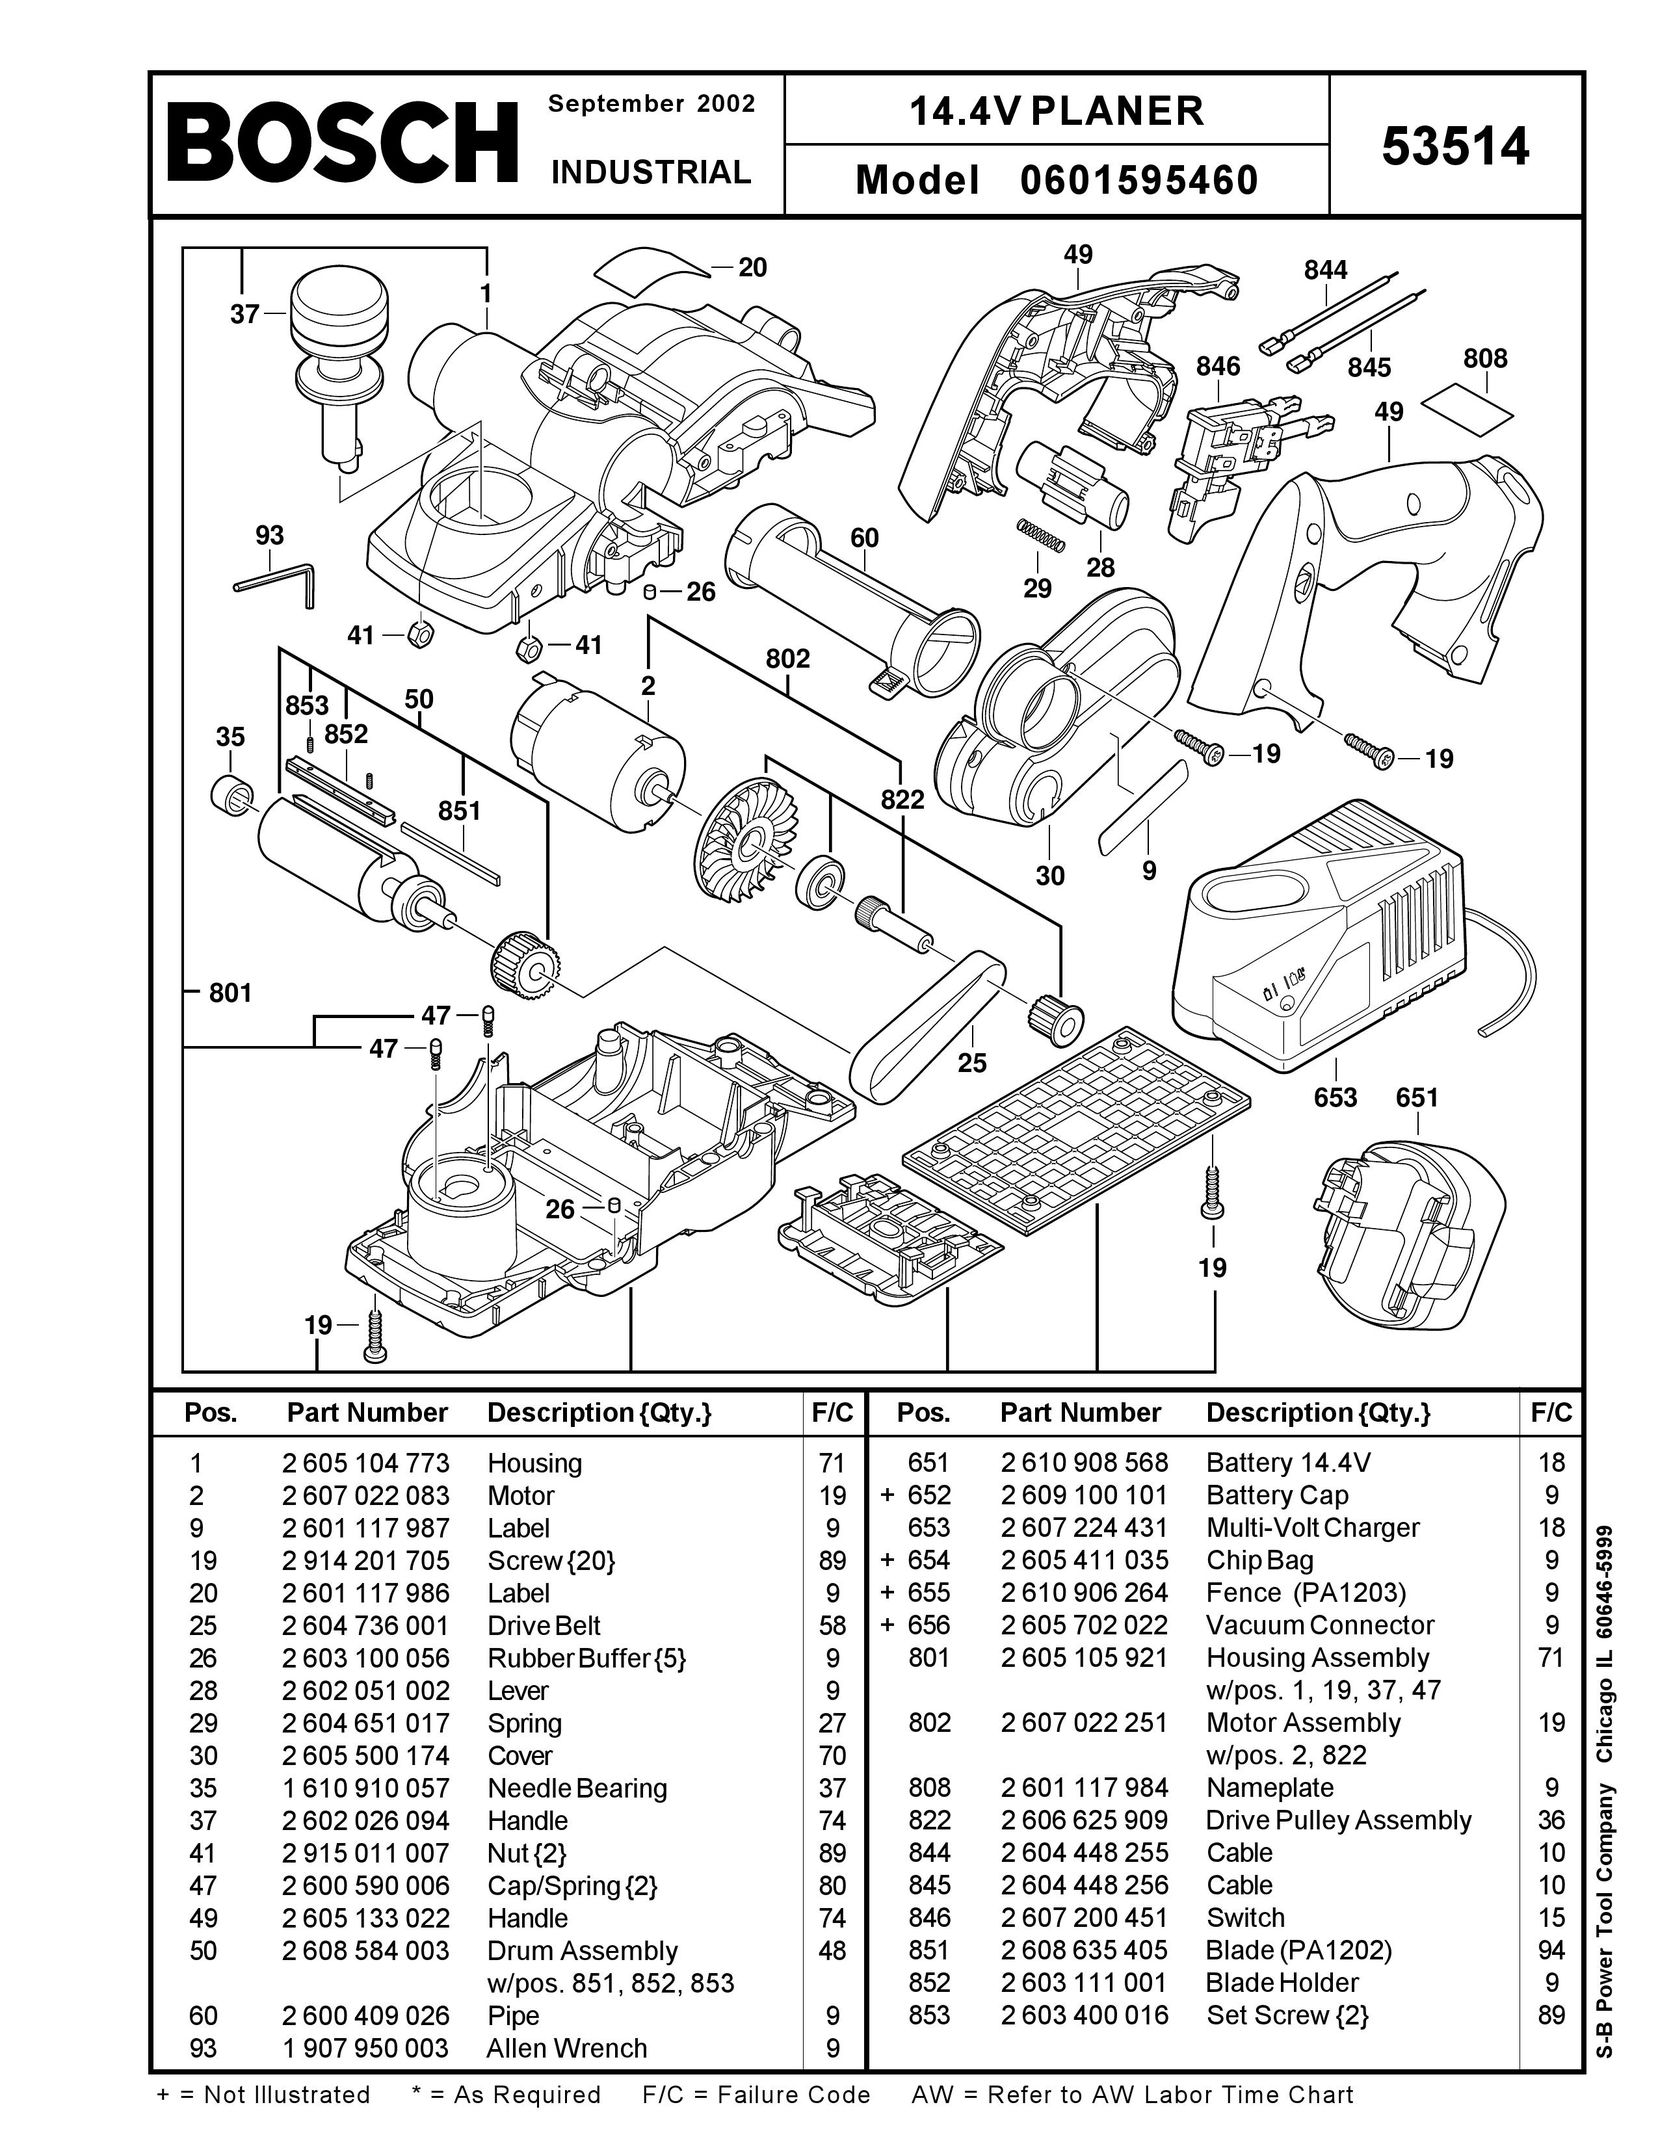 Bosch Power Tools 601595460 Planer User Manual